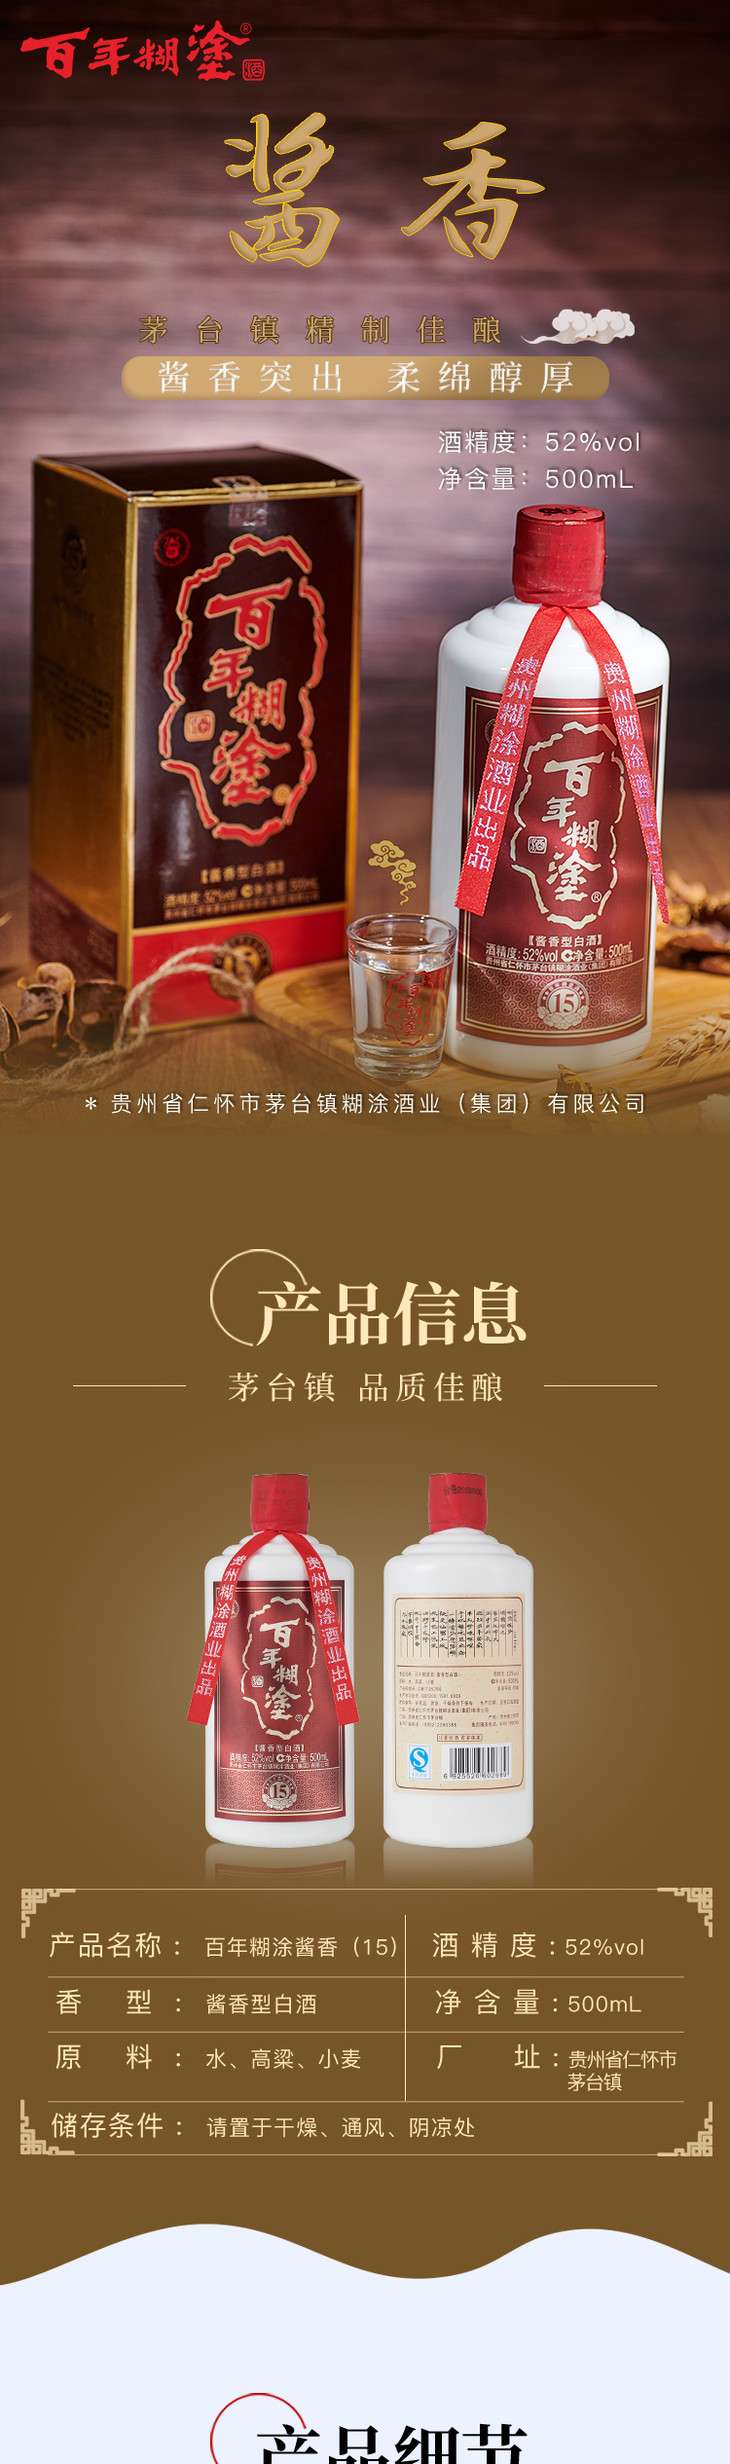 百年糊涂酱香(15)酱香型白酒52度 ——始创于2015年源于茅台地道老